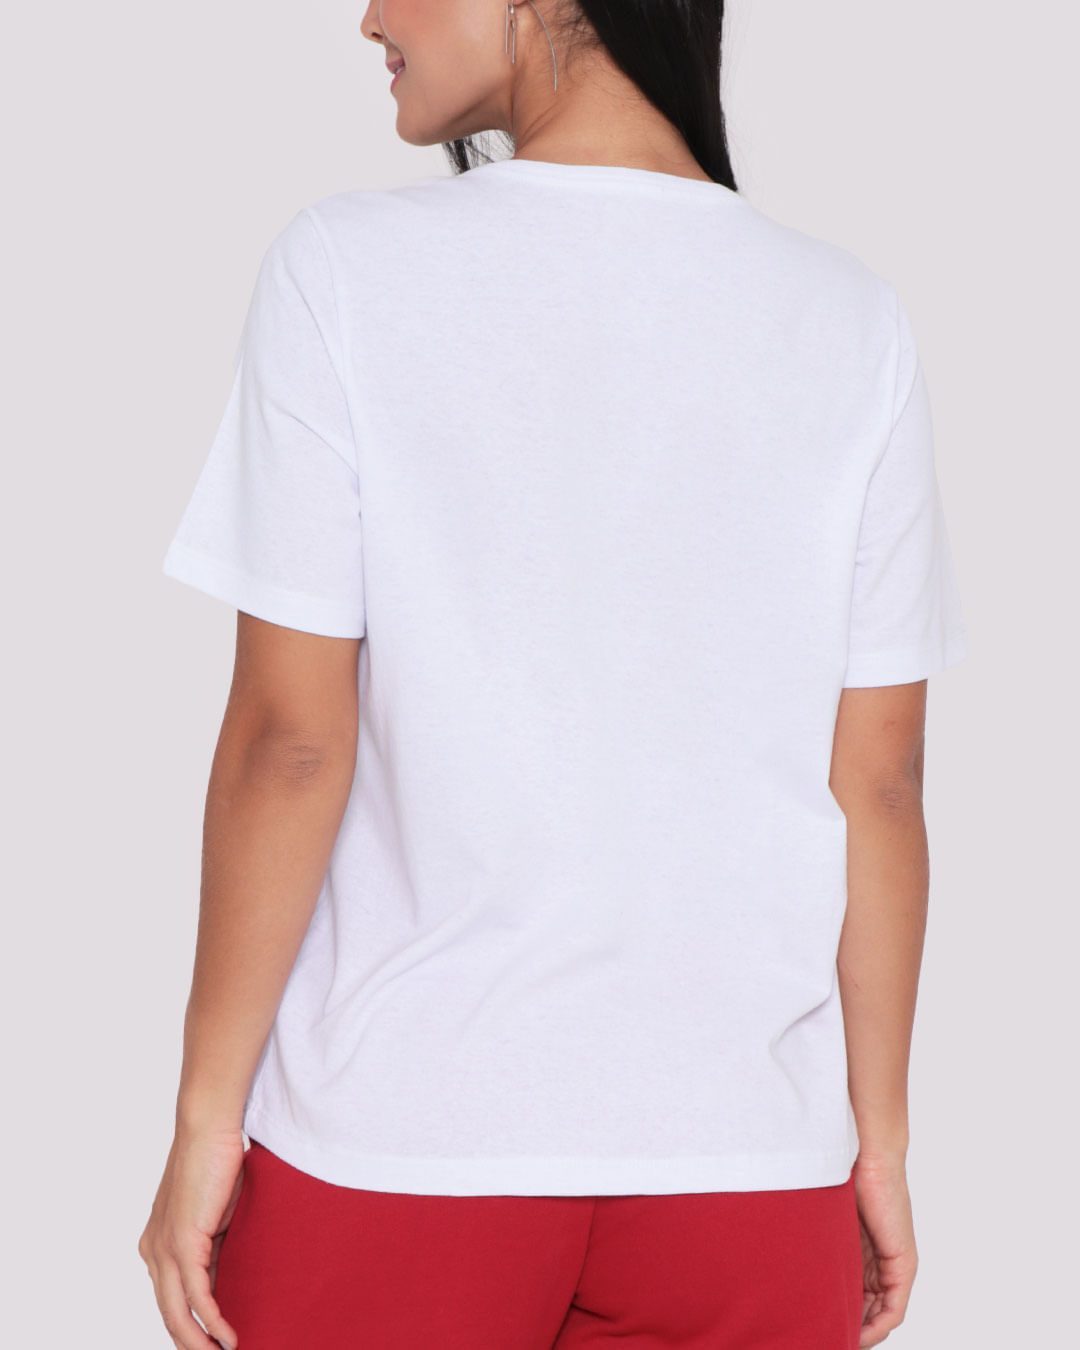 Camiseta-Feminina-Estampa-Stitch-Disney-Branca-